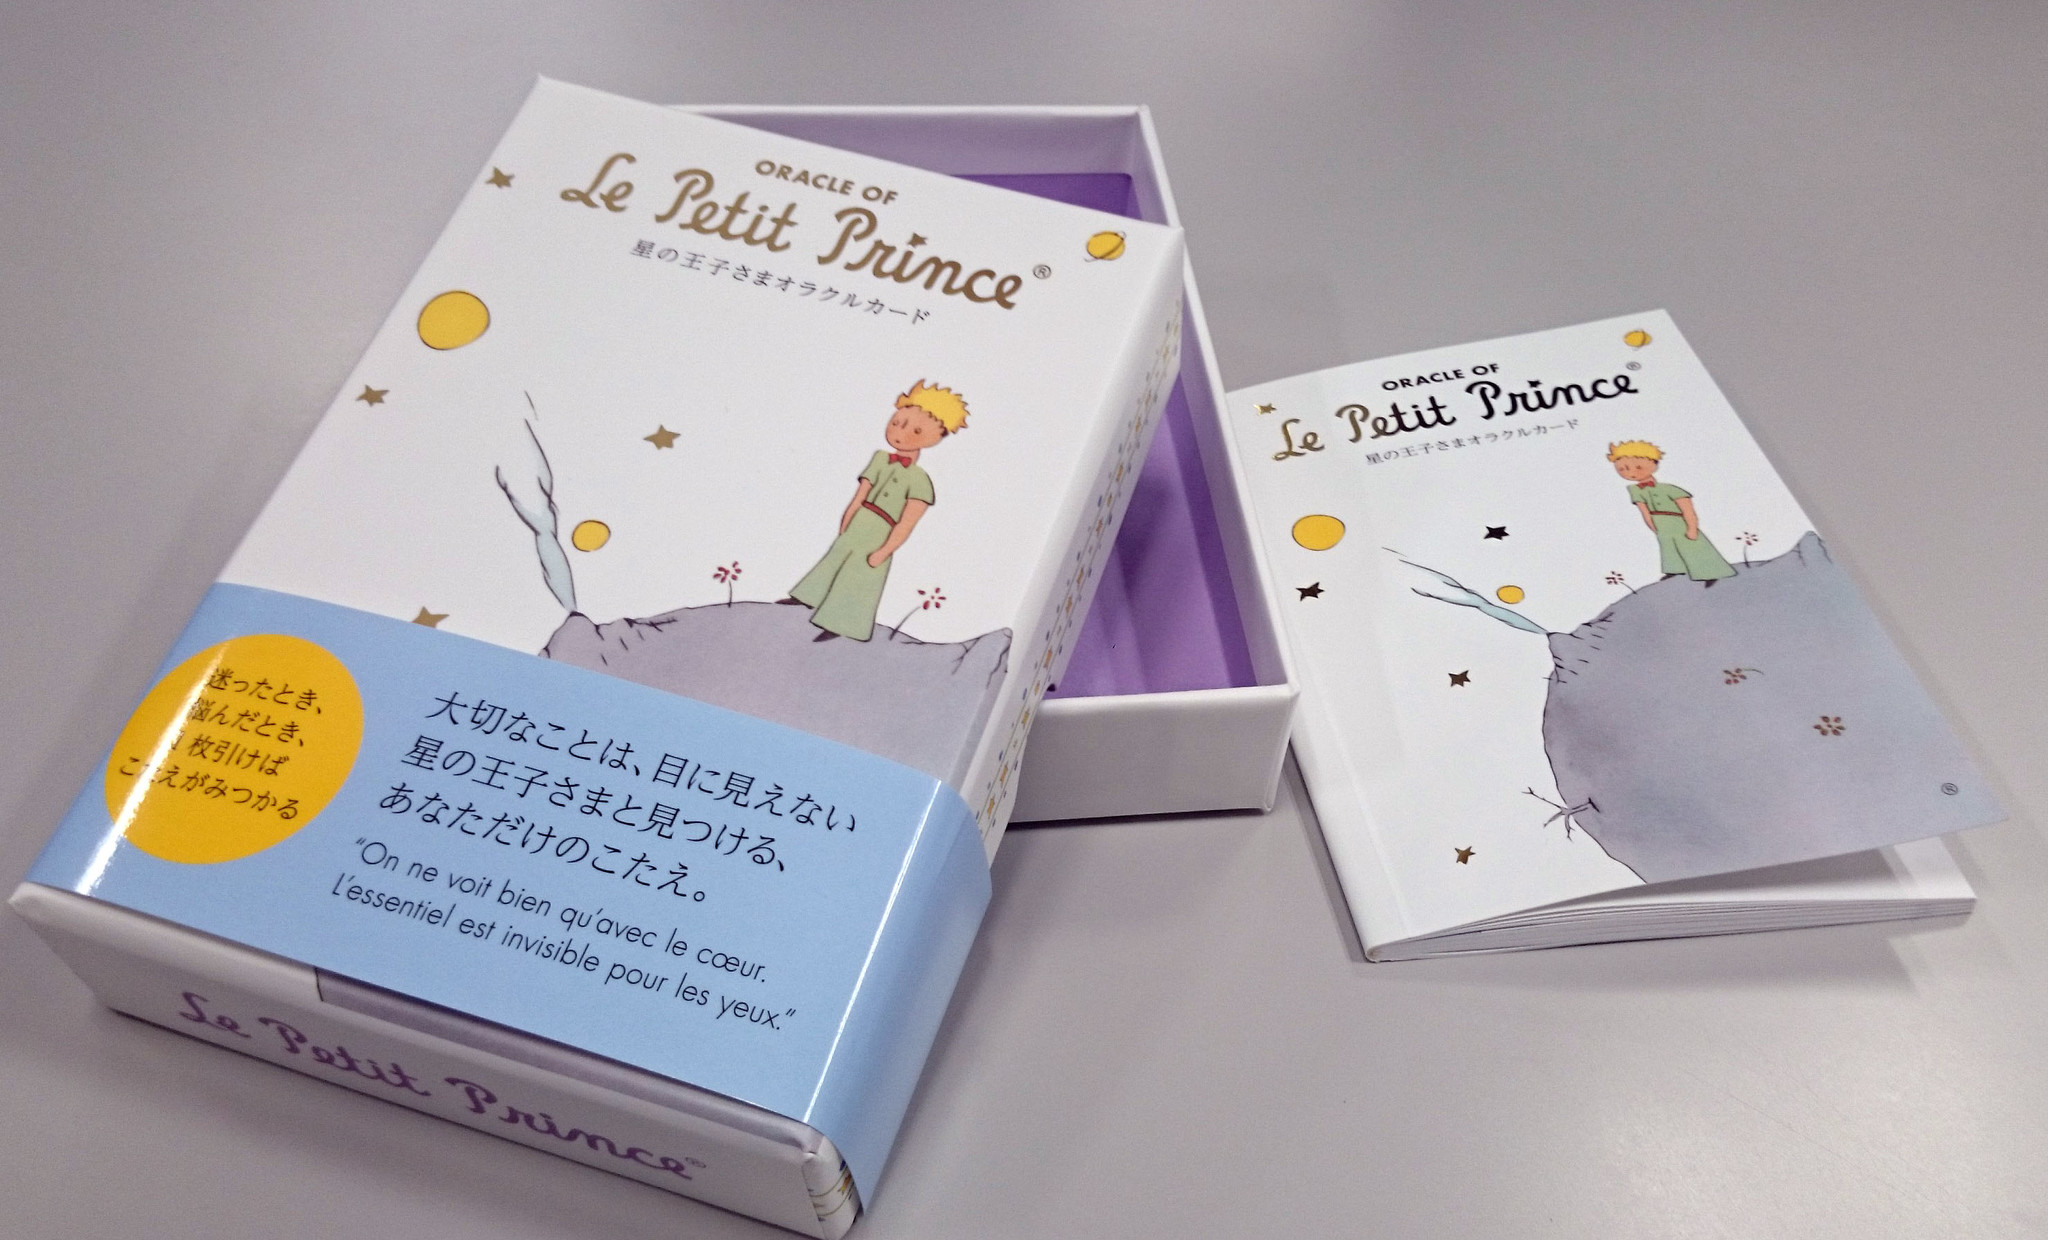 星の王子さま 初めてのカード発売 星の王子さま オラクルカードoracle Of Le Petit Prince 株式会社kadokawaのプレスリリース